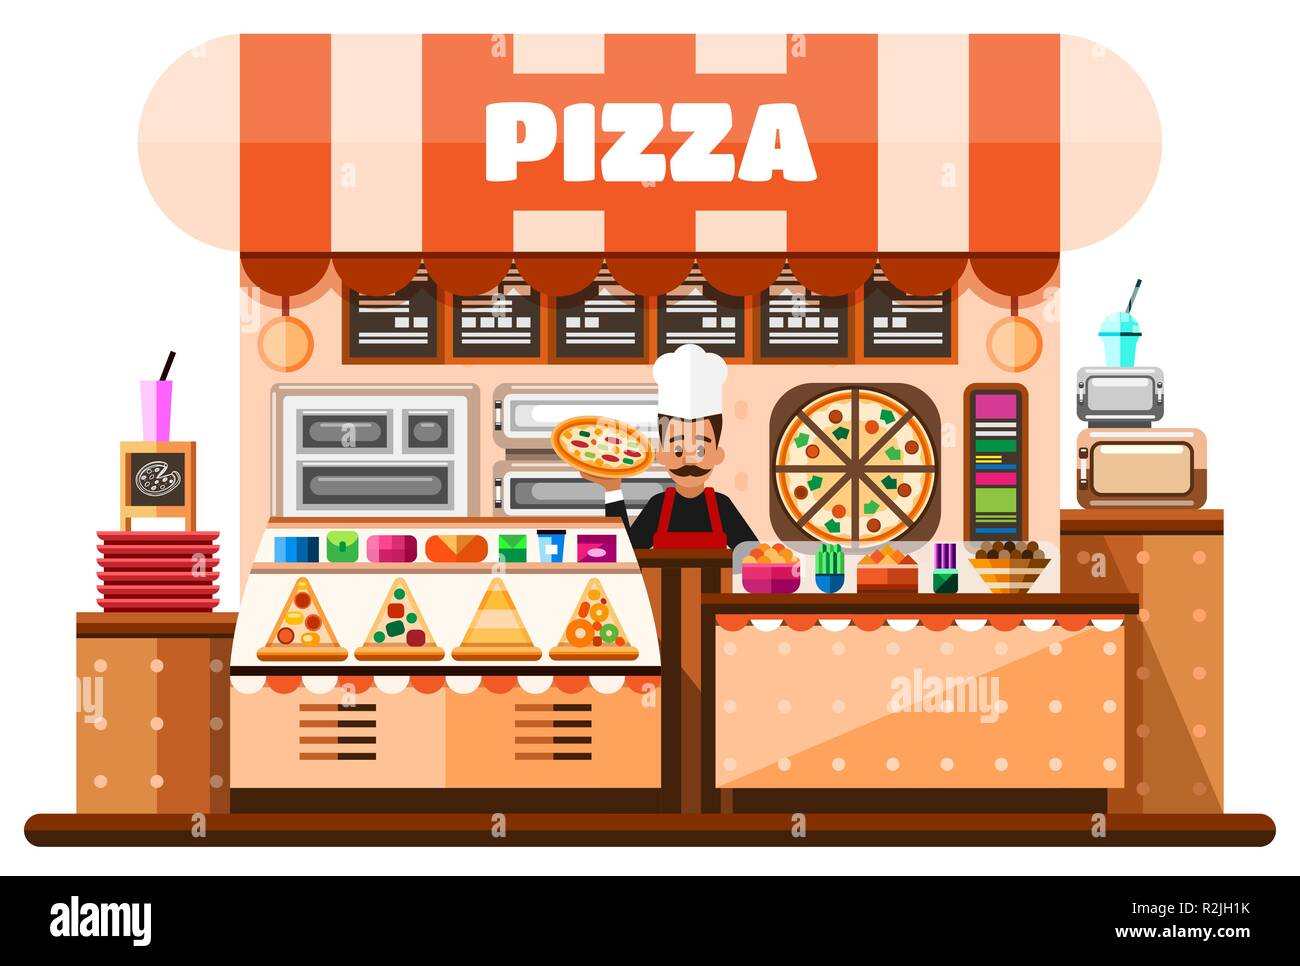 Pizza house intérieur avec pizzaiolo italien holding pizza chaude et debout derrière un bureau de comptoir avec équipement de fabrication de pizzas, menu et goodies. Télévision Illustration Illustration de Vecteur